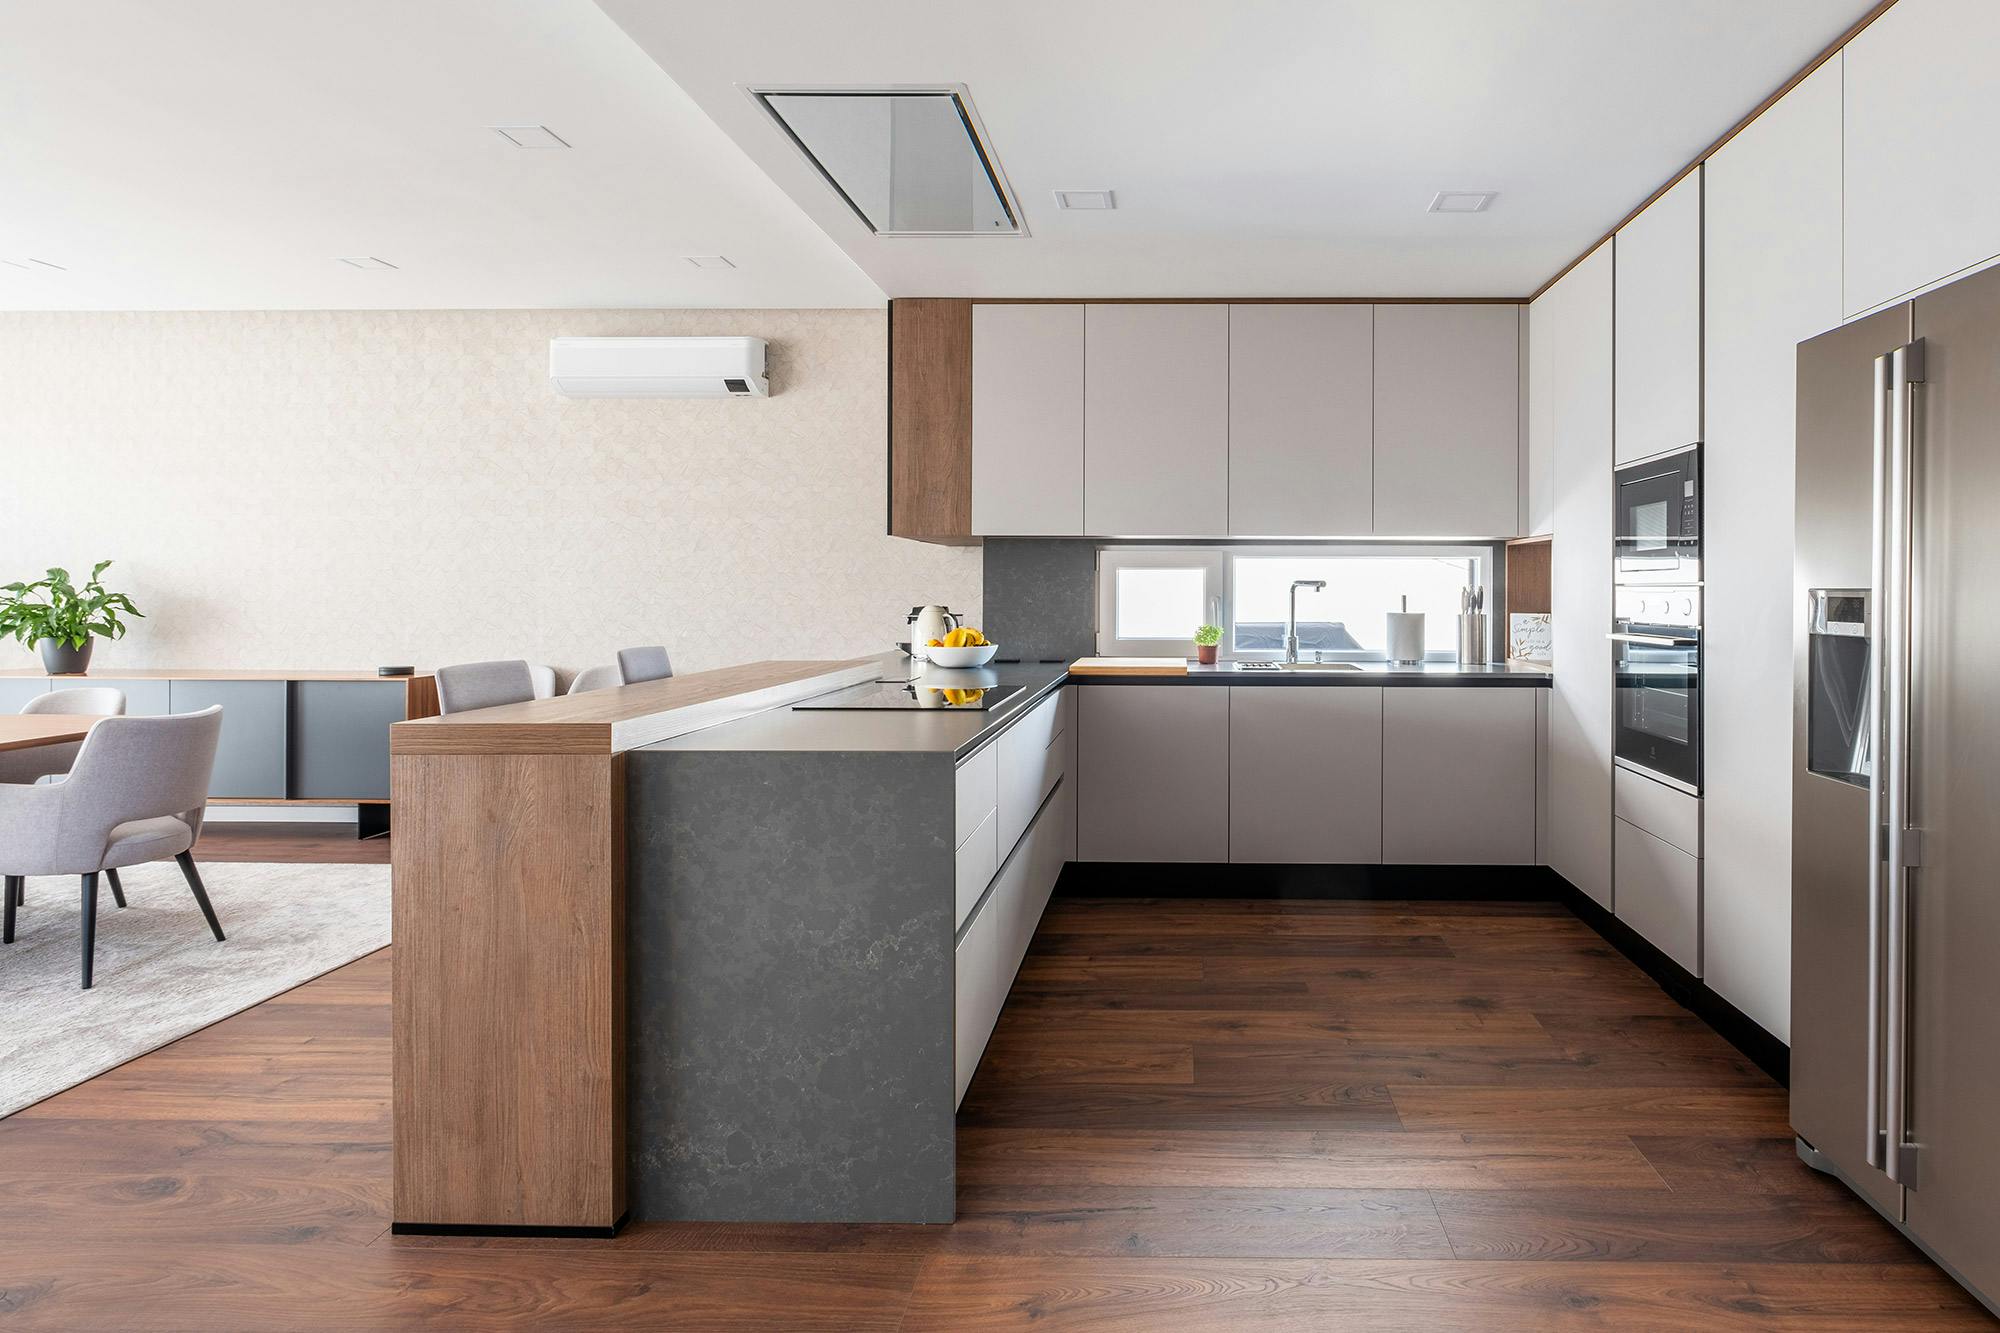 Bildnummer 43 des aktuellen Abschnitts von Professional features for a domestic kitchen worktop von Cosentino Deutschland